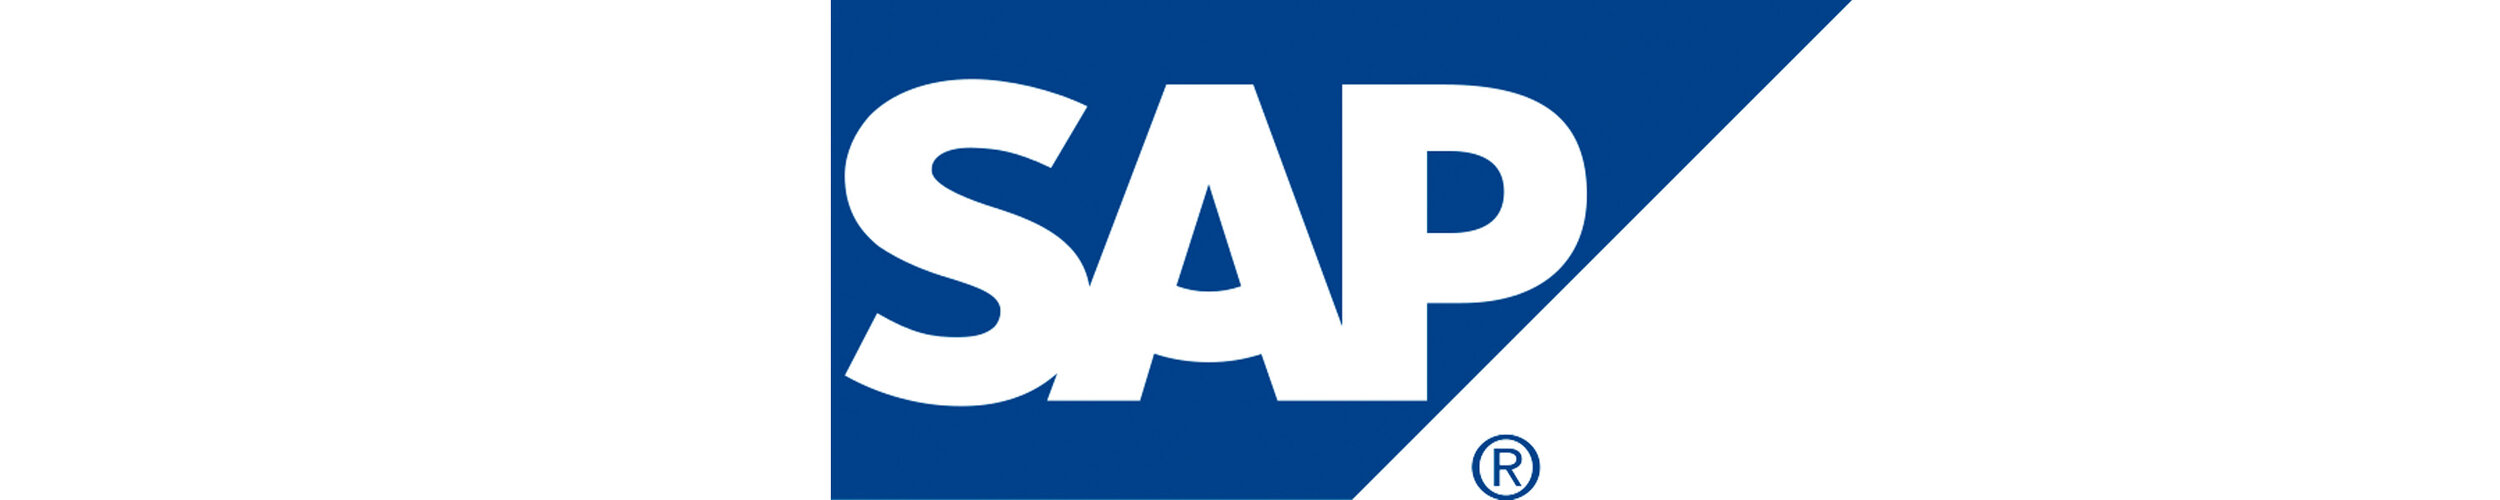 SAP logo.jpg